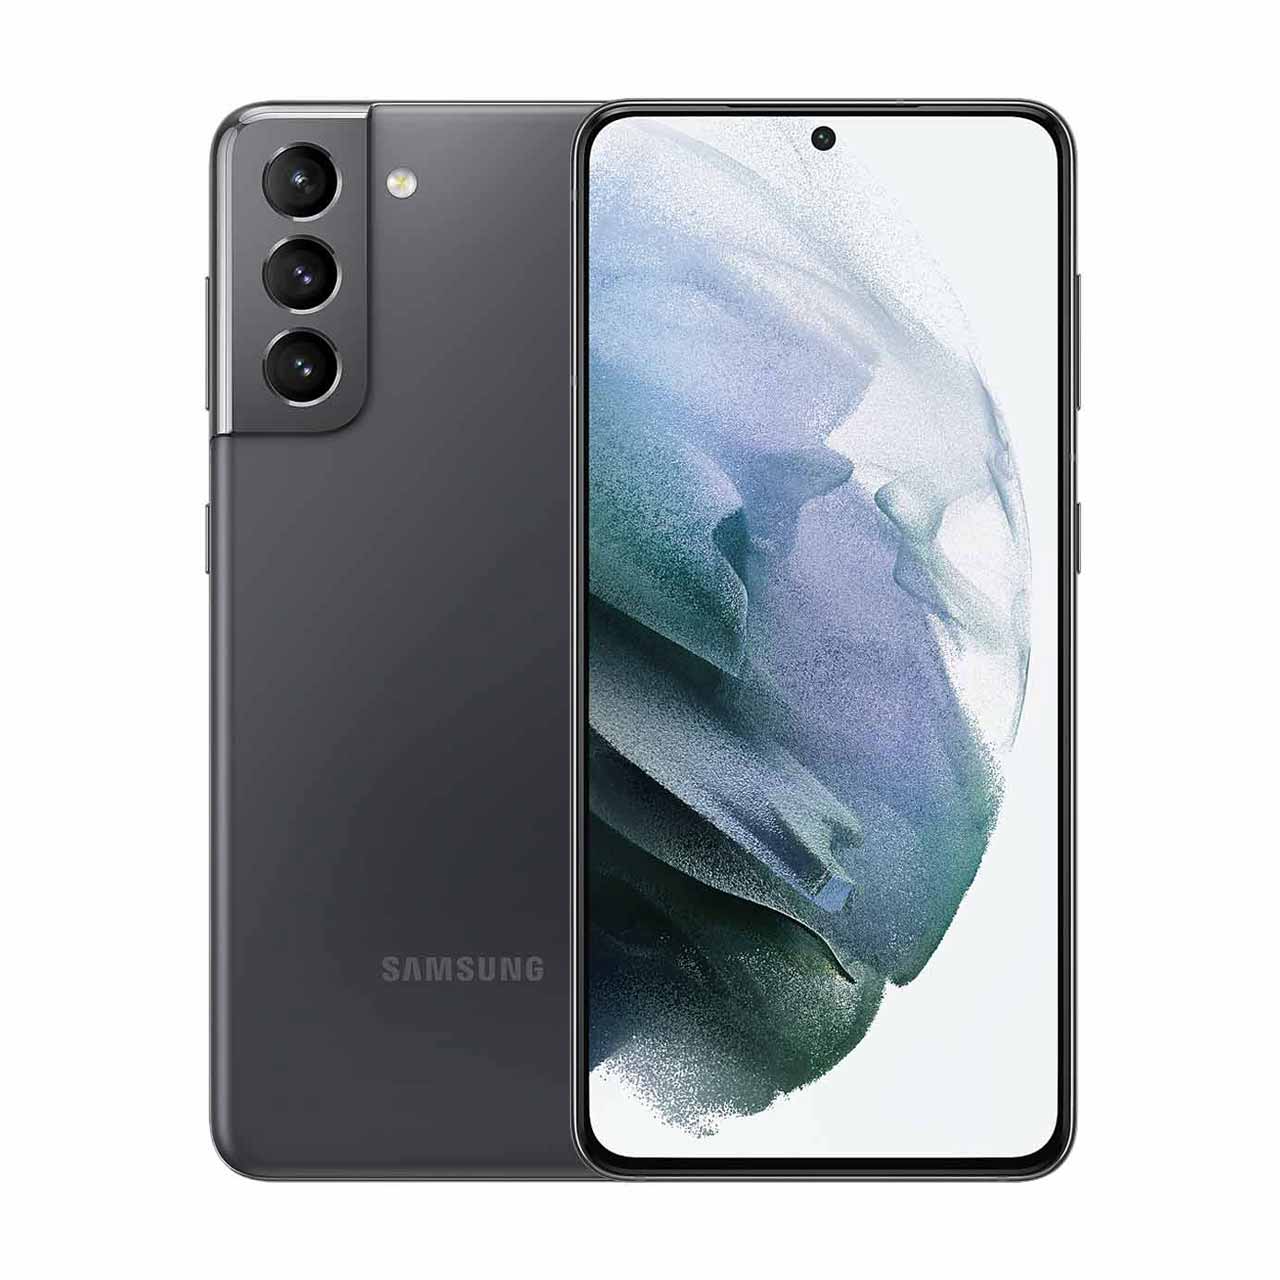  گوشی موبایل سامسونگ مدل Galaxy S21 FE 5G (RAM 8) ظرفیت 256GB - خاکستری (ویتنام)     